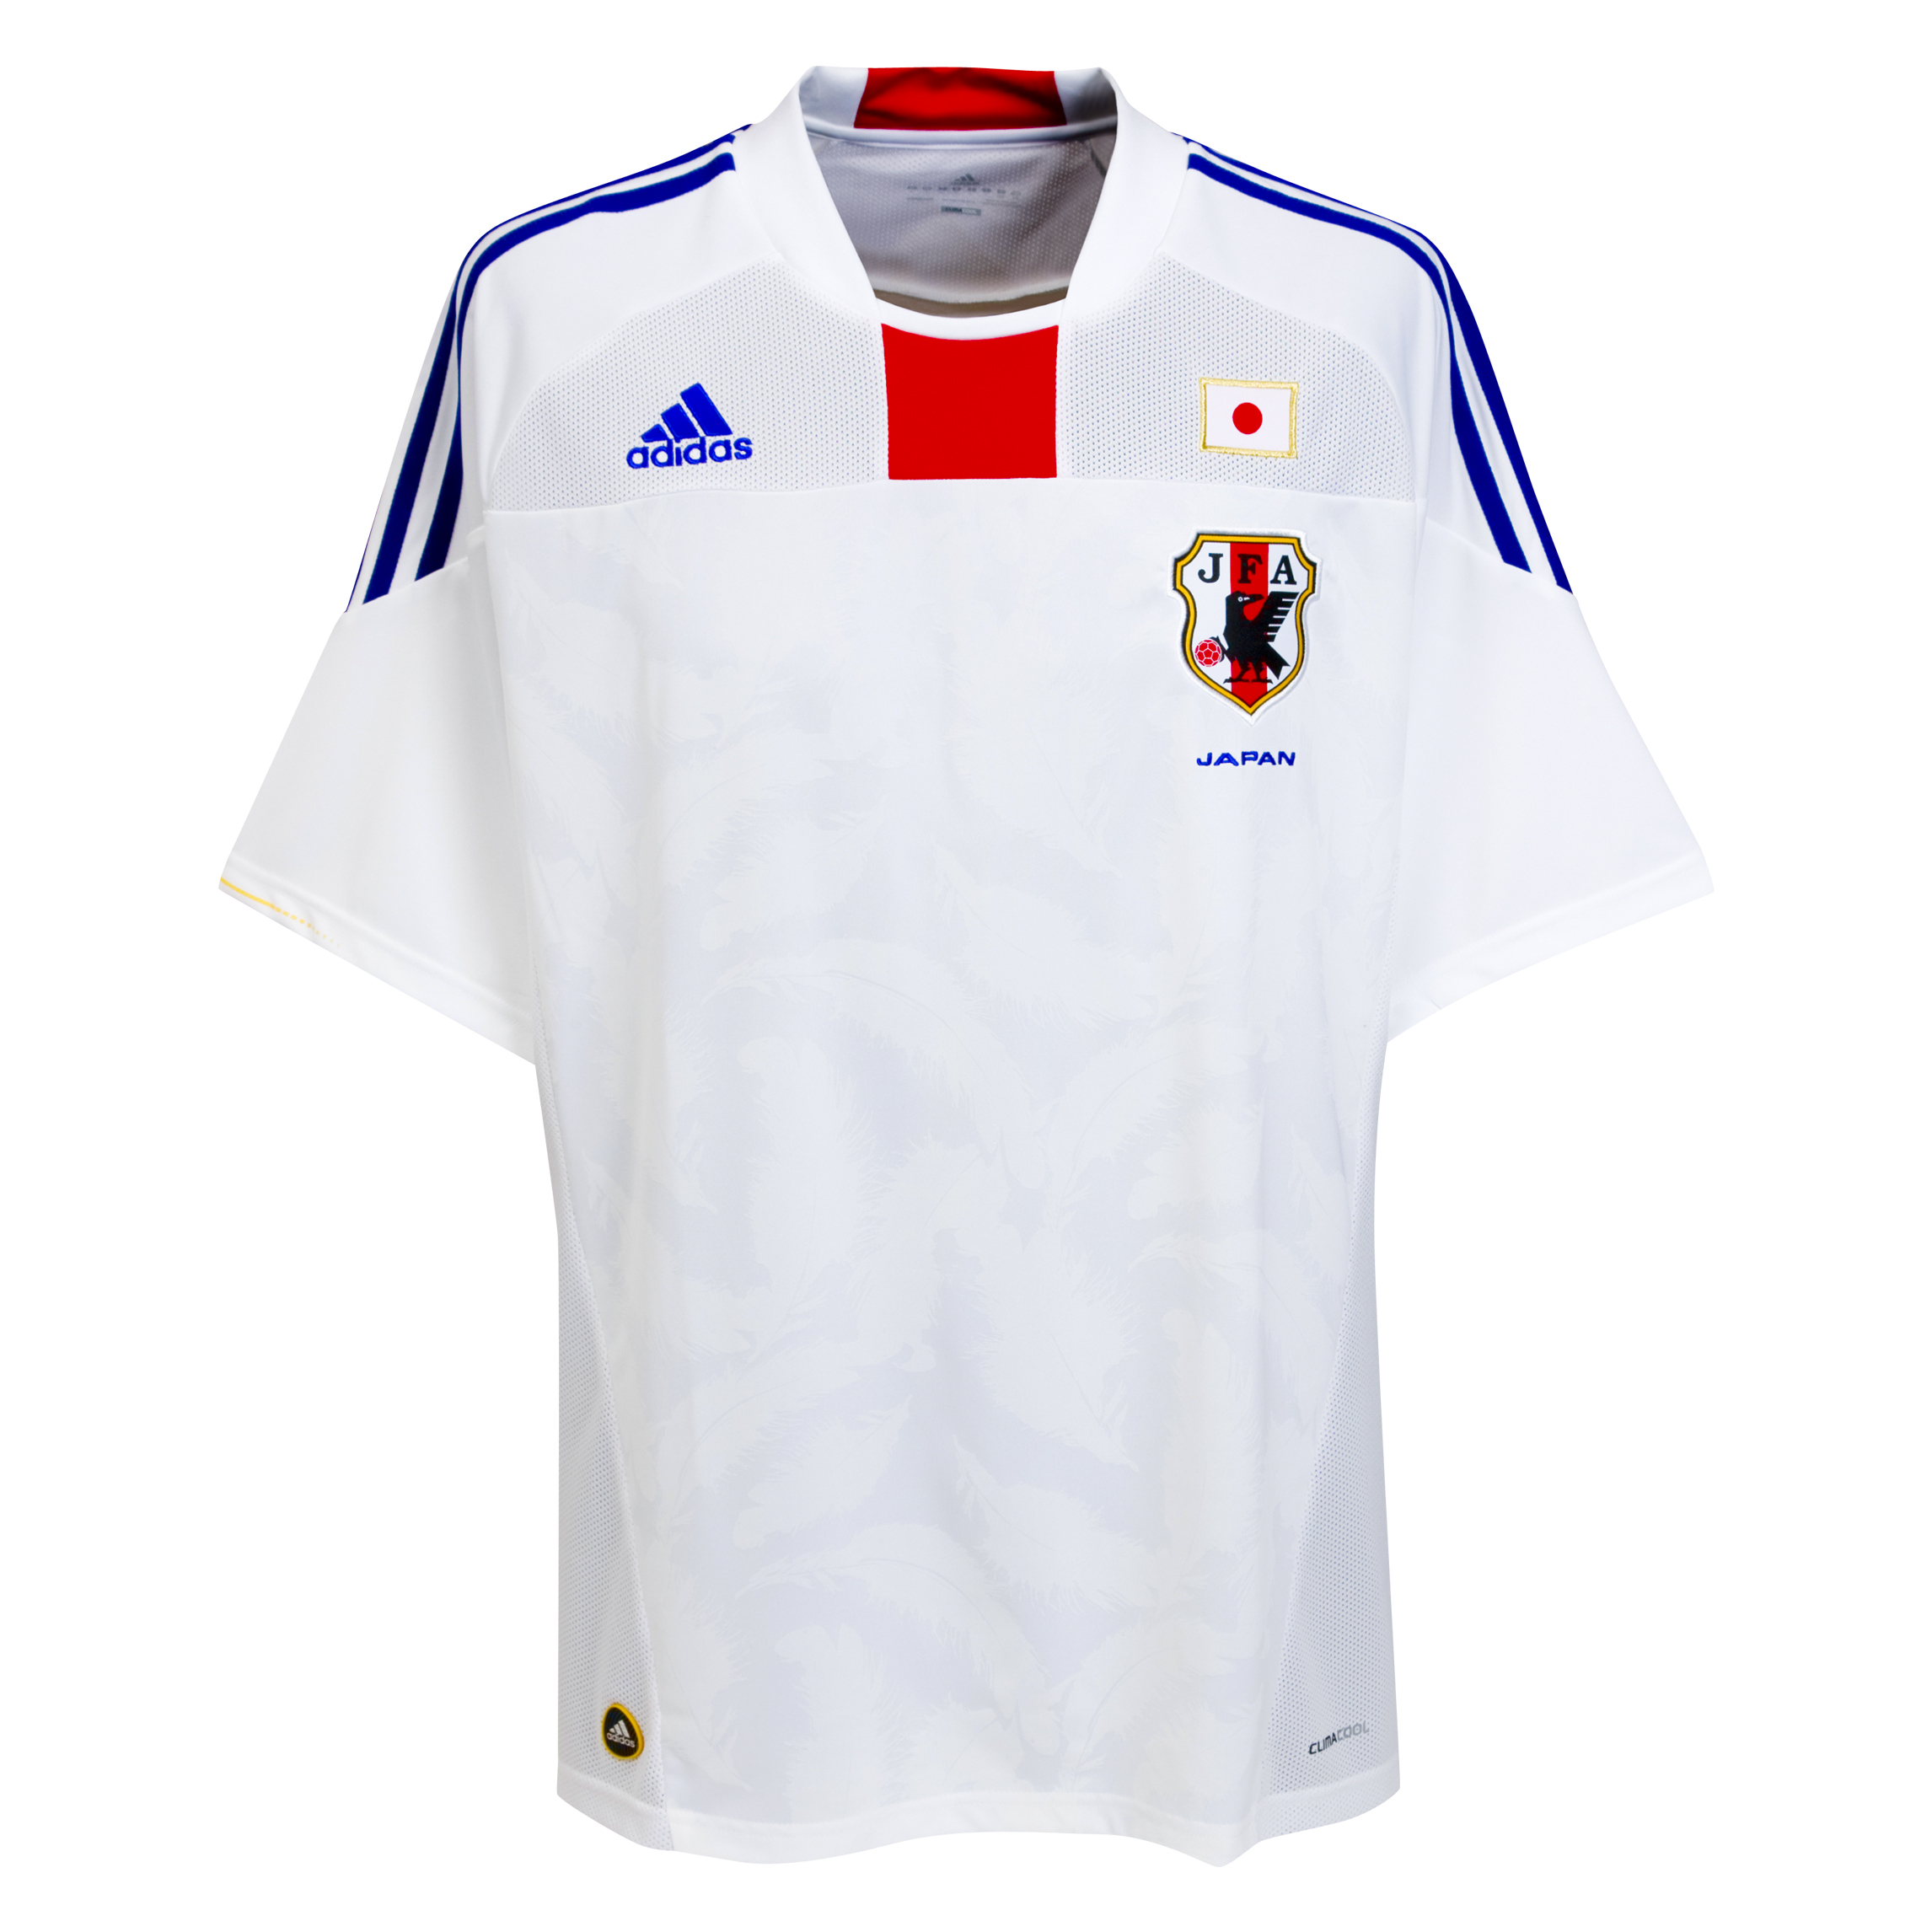 ملابس المنتخبات في كأس العالم 2010 Kb-66941